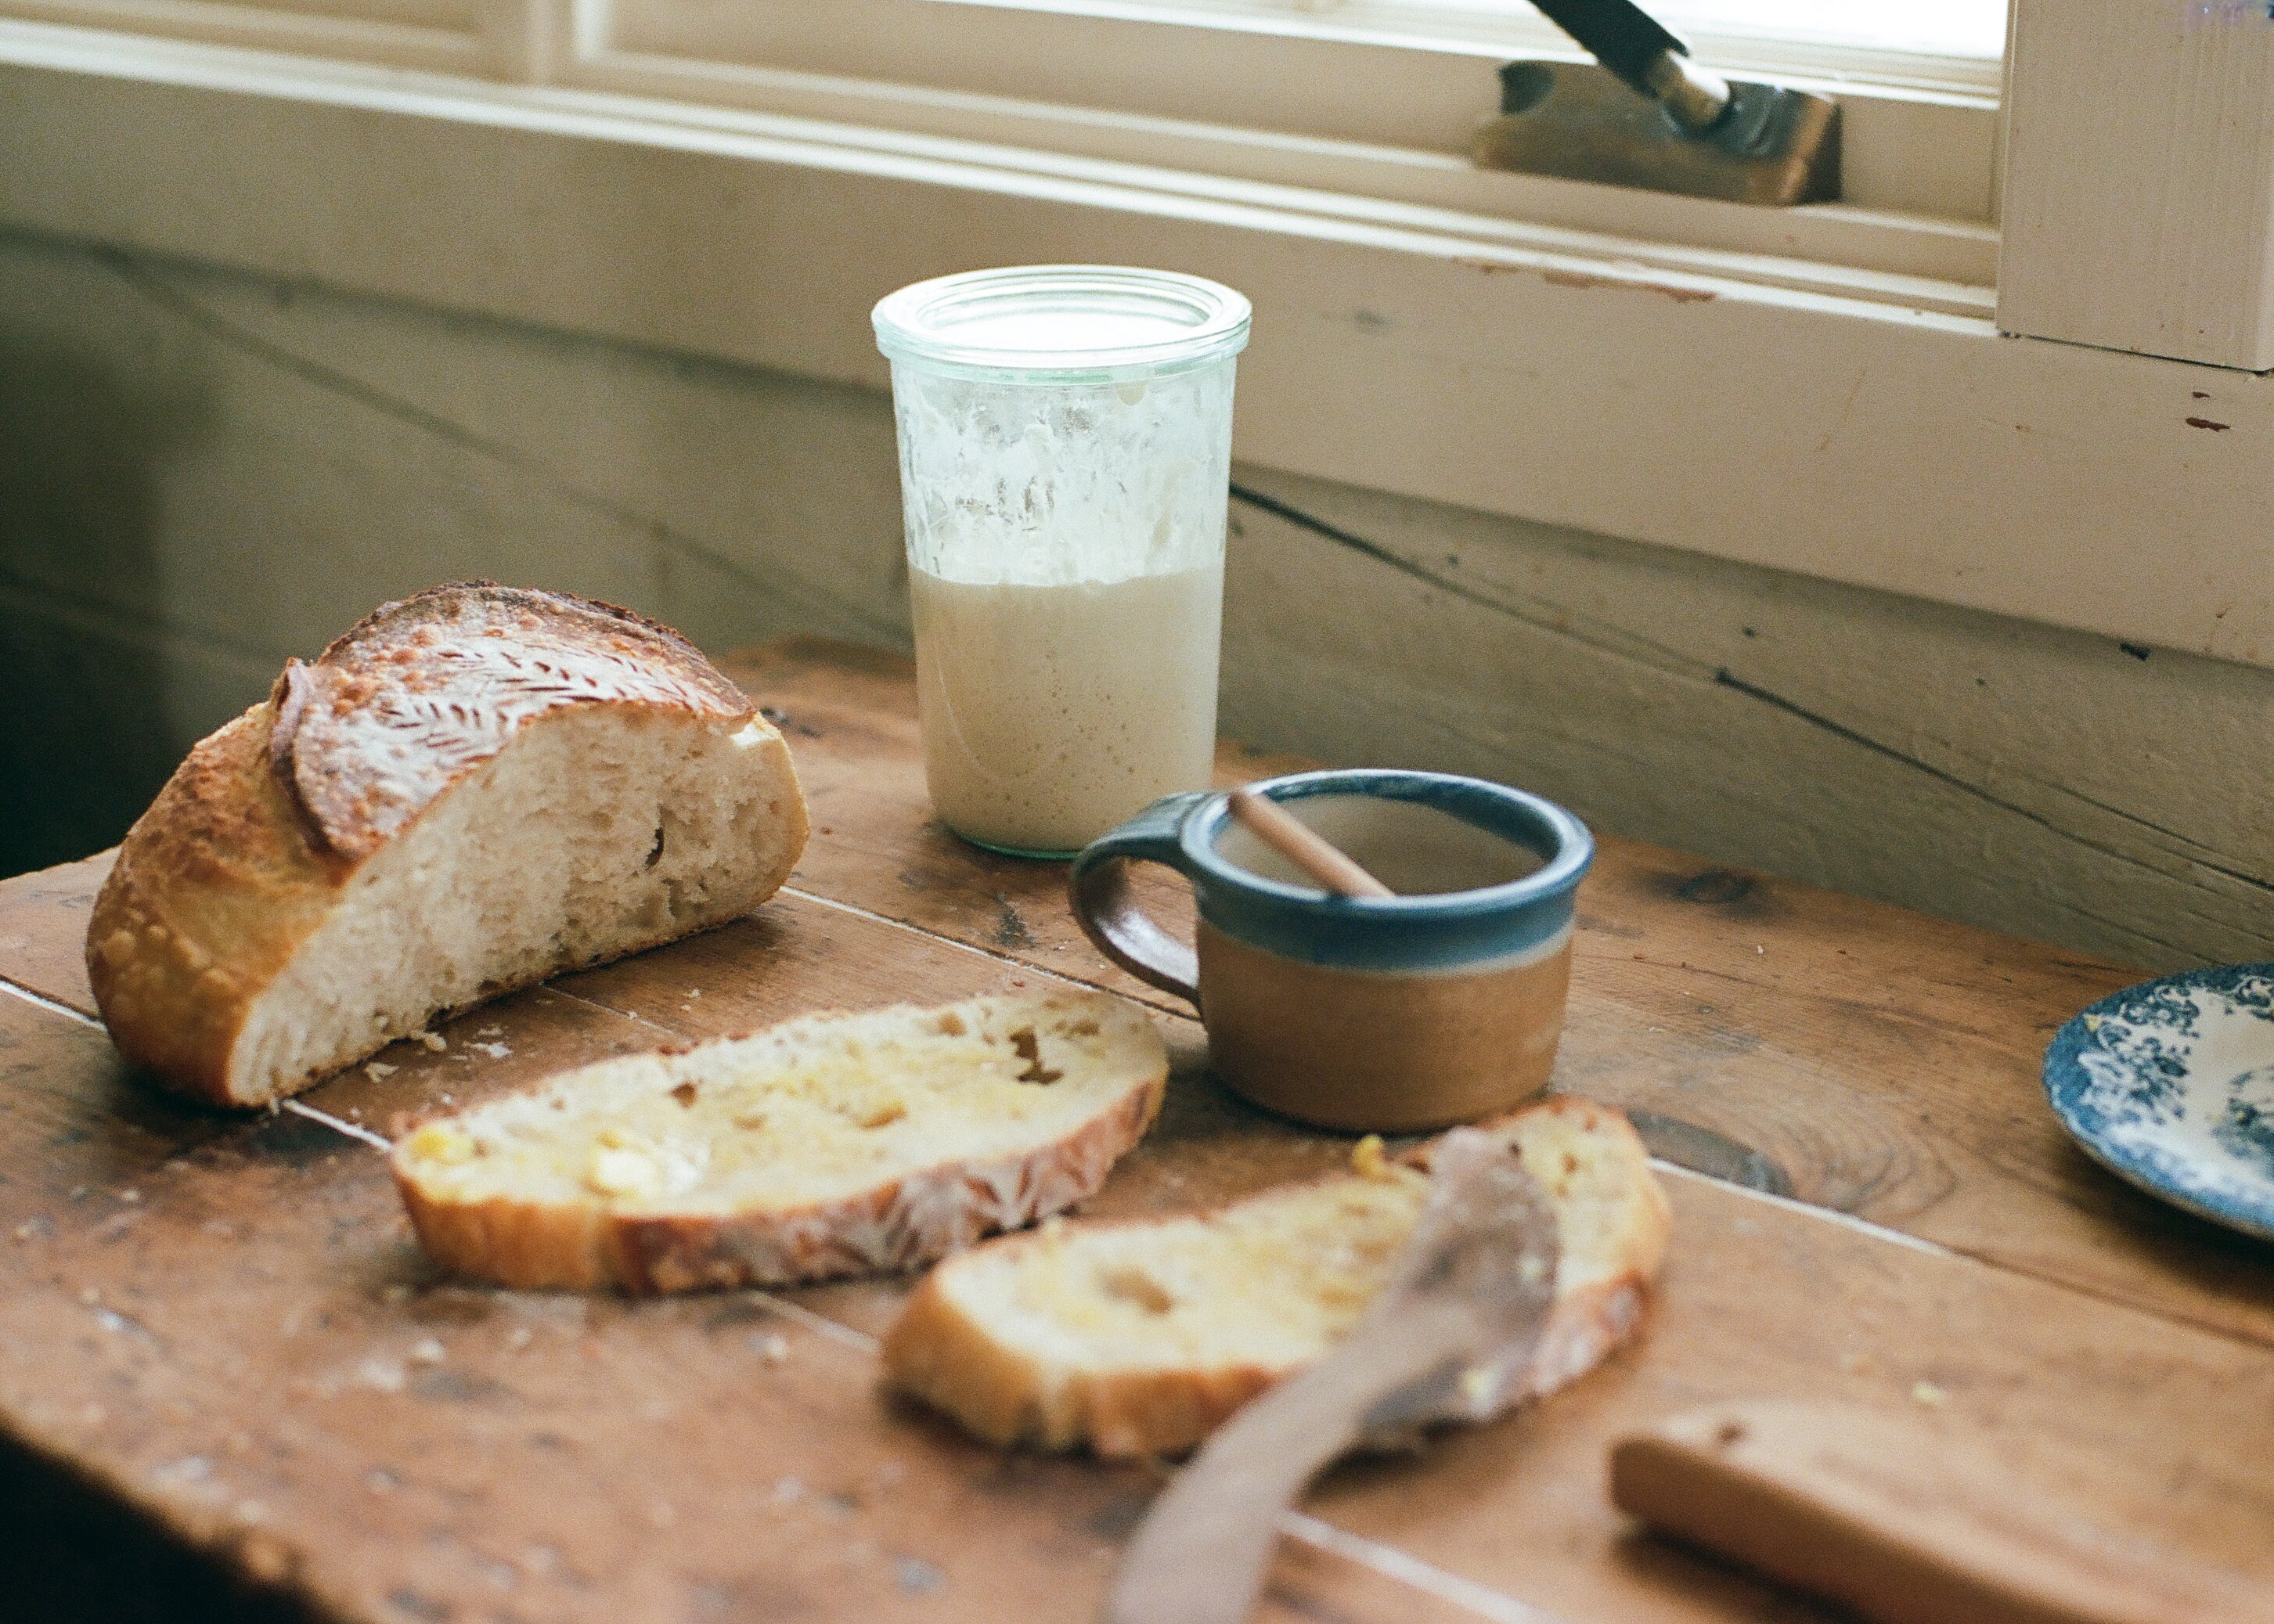 Bread starter culture – LBB BR